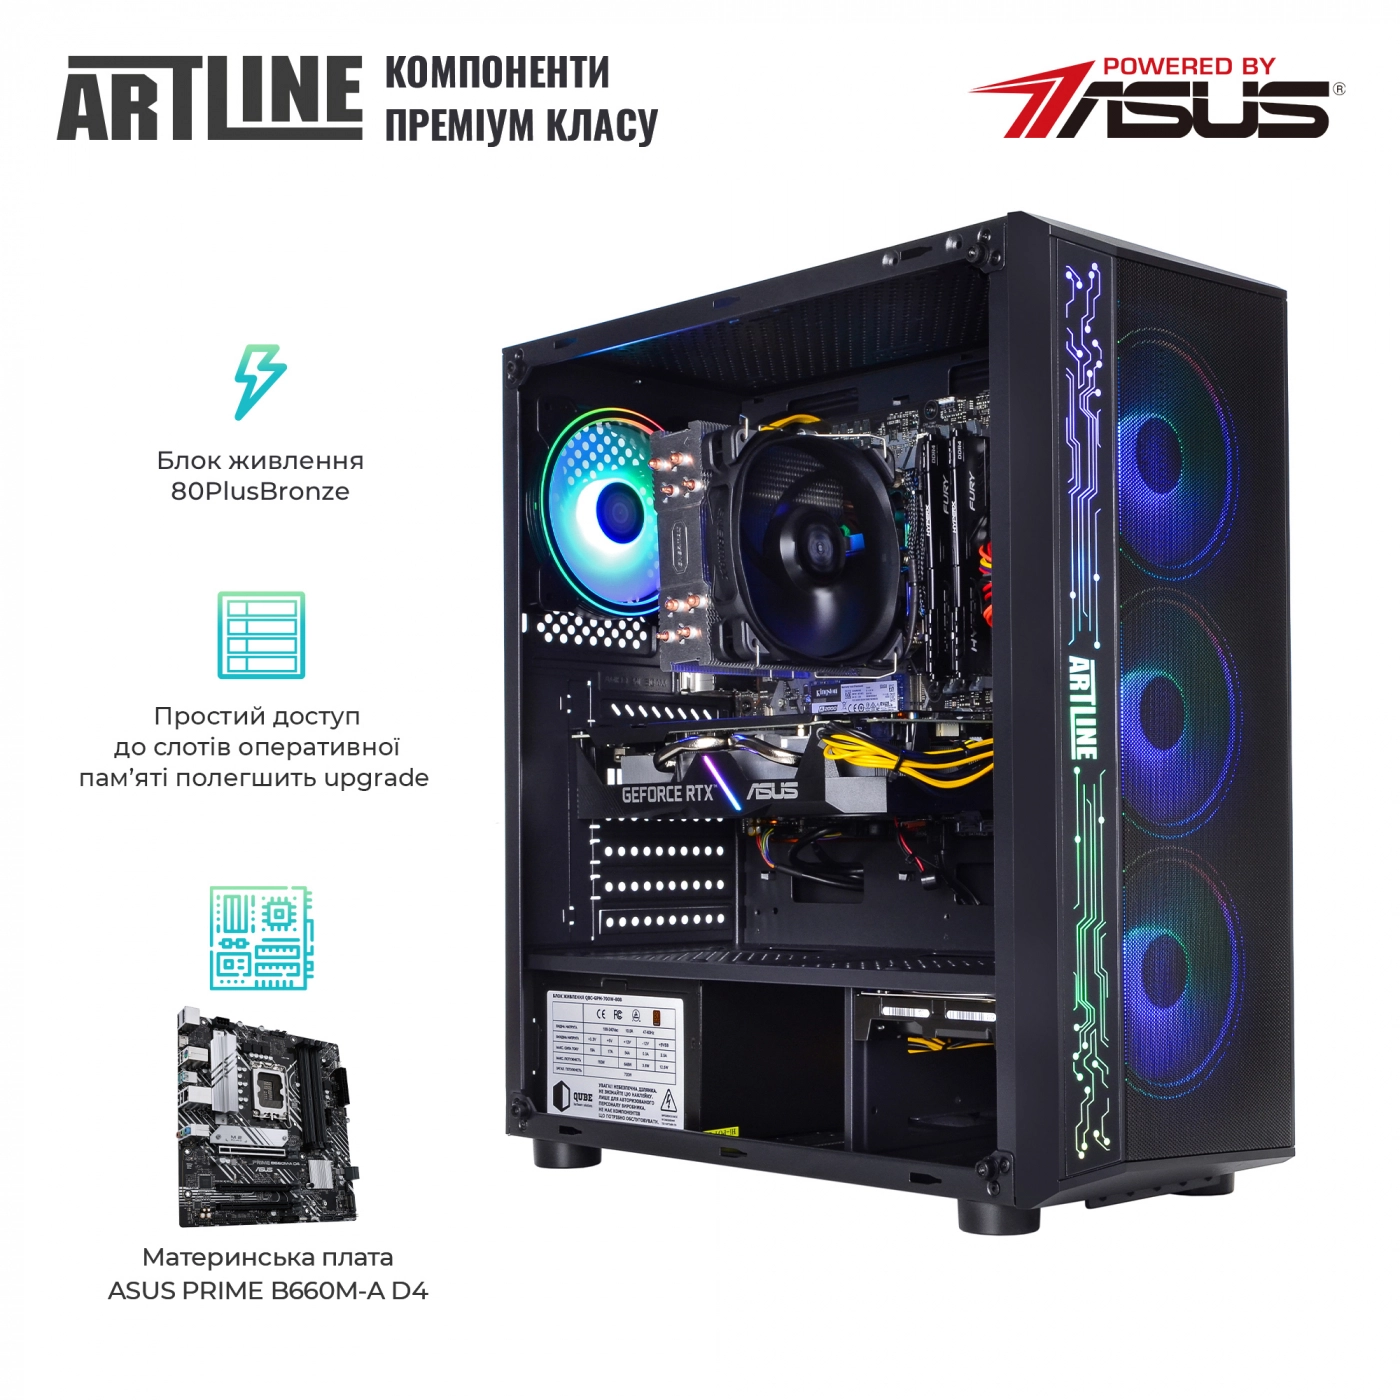 Купить Компьютер ARTLINE Gaming X55v42 - фото 3